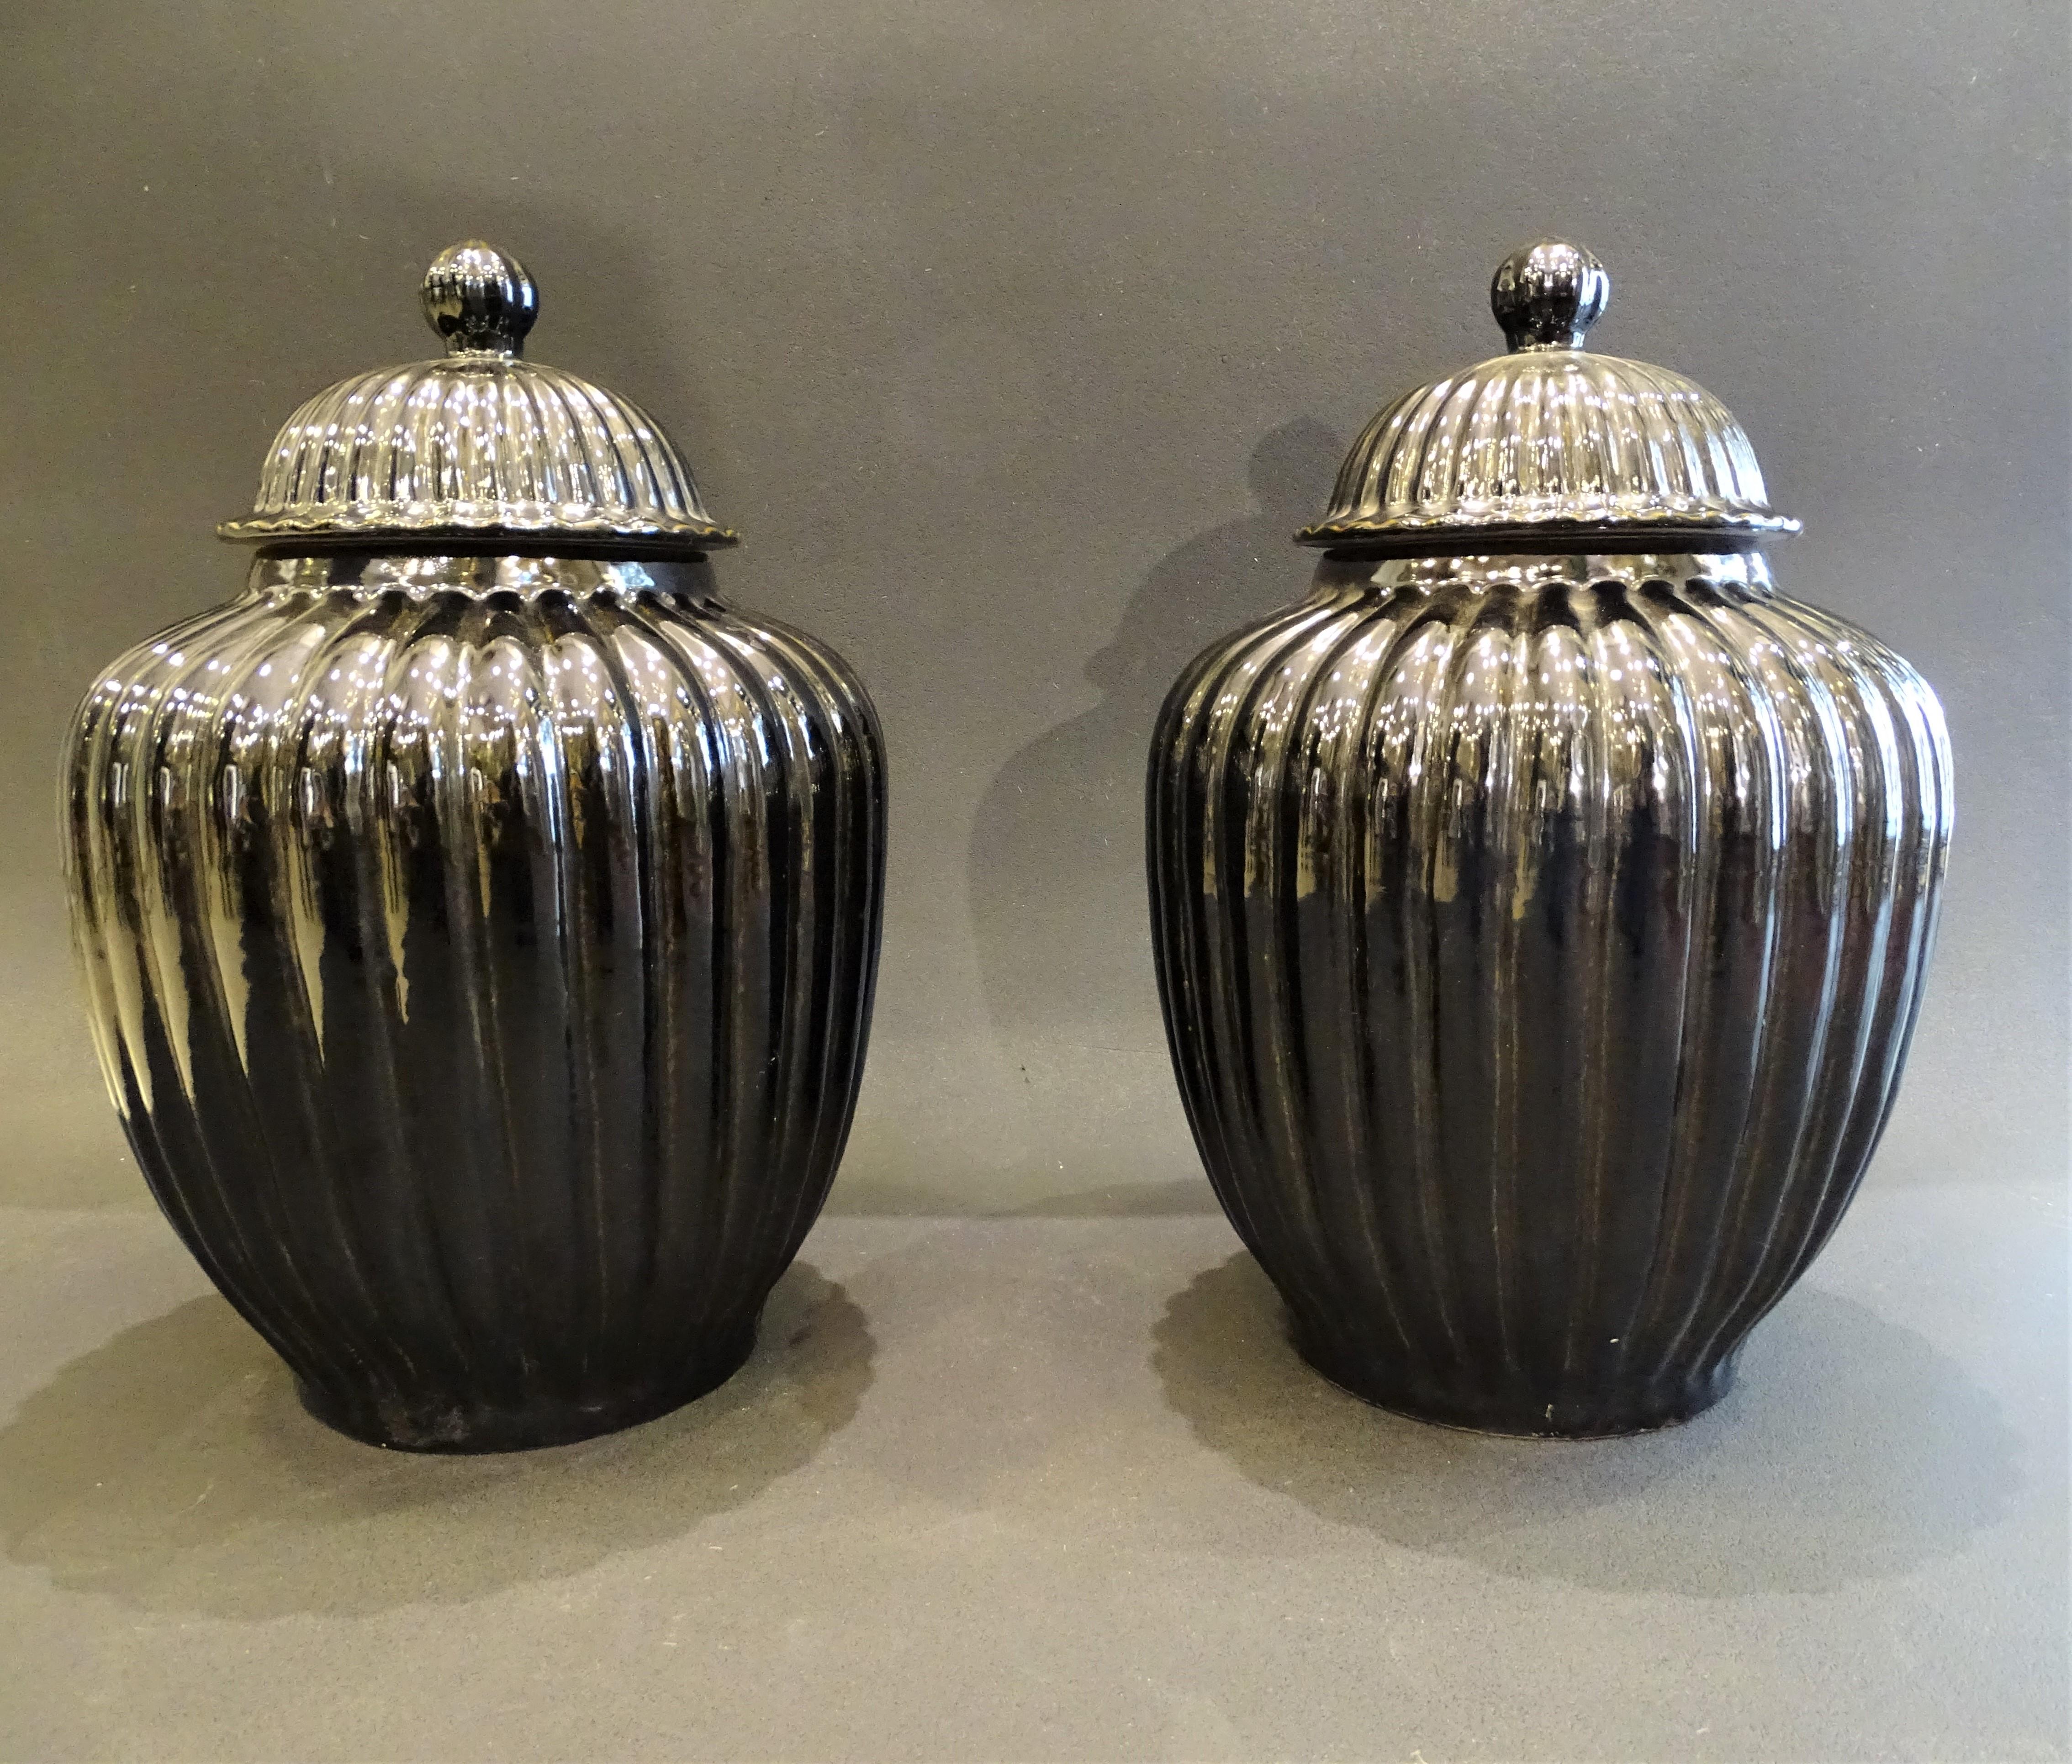 Pair of Black Ceramic Italian Vases, Bucaros, Centerpieces For Sale 5